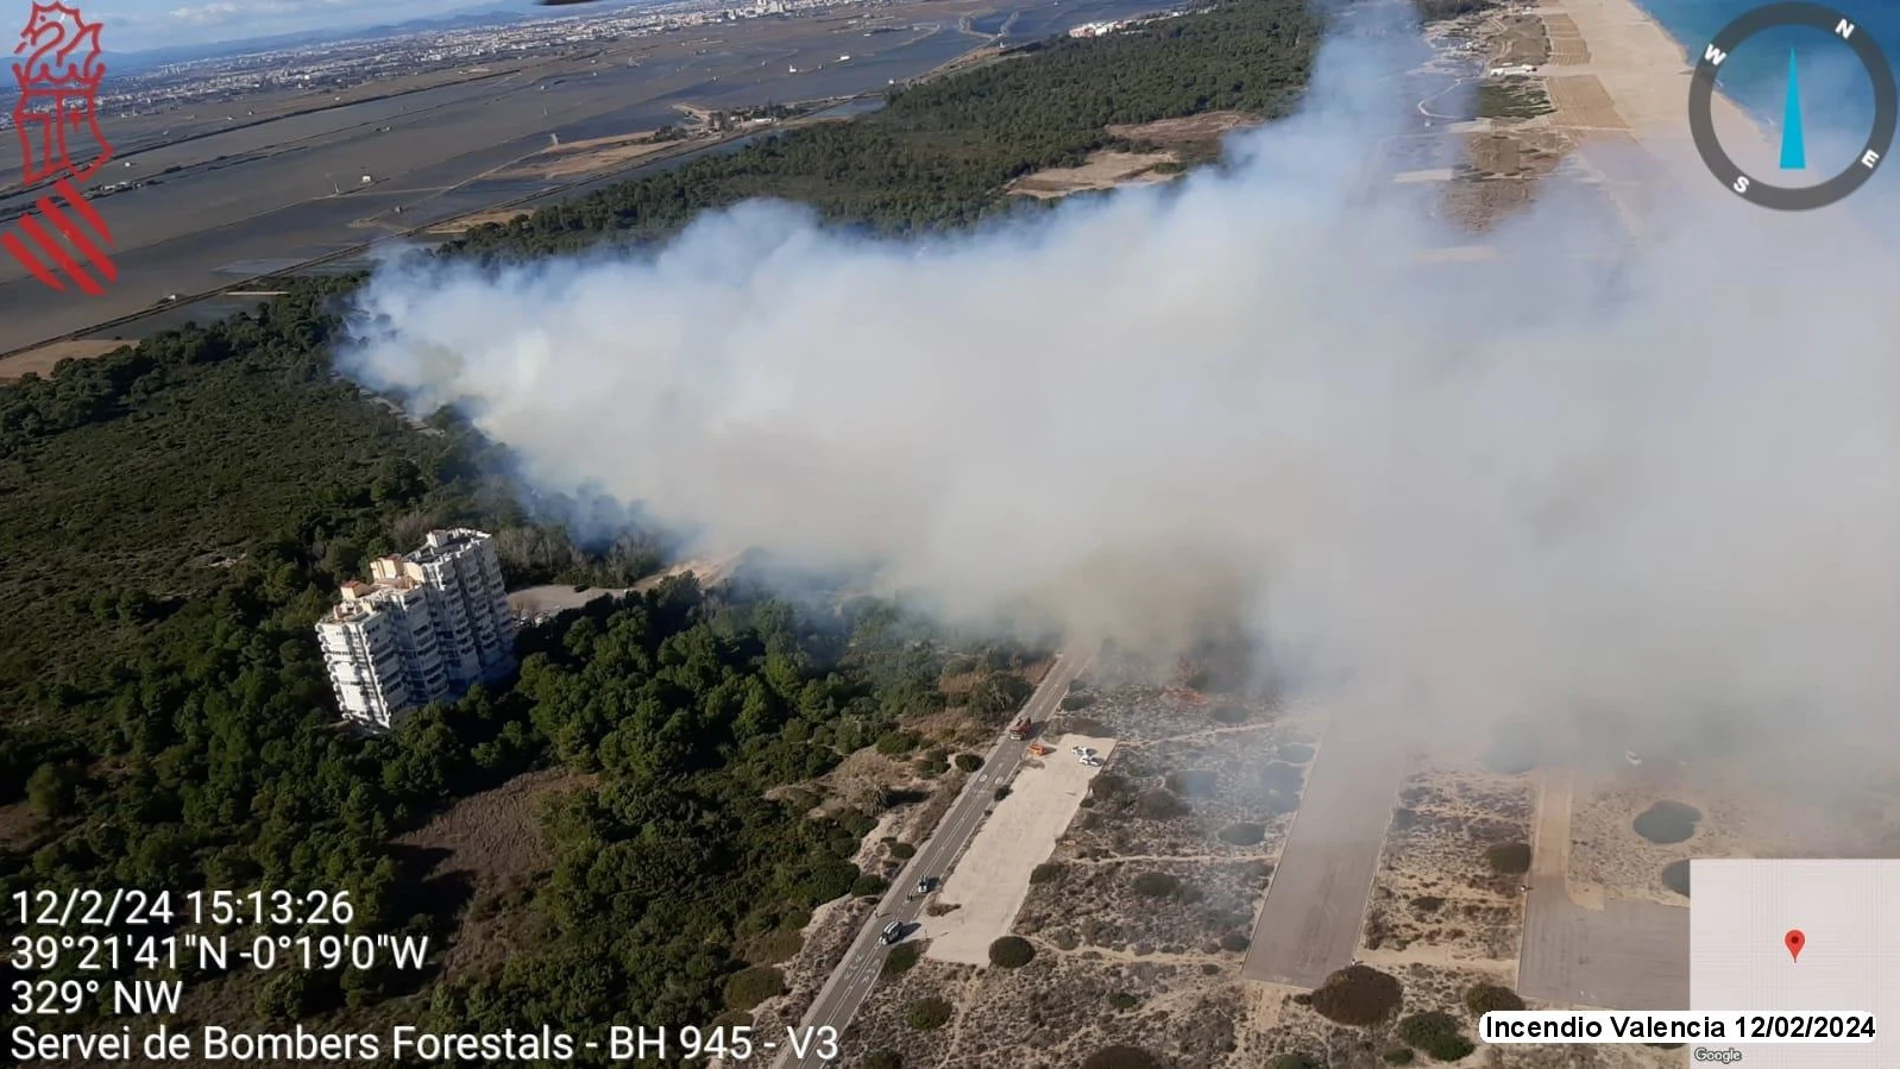  Vista aérea del incendio forestal en El Saler el pasado 12 de febrero. 